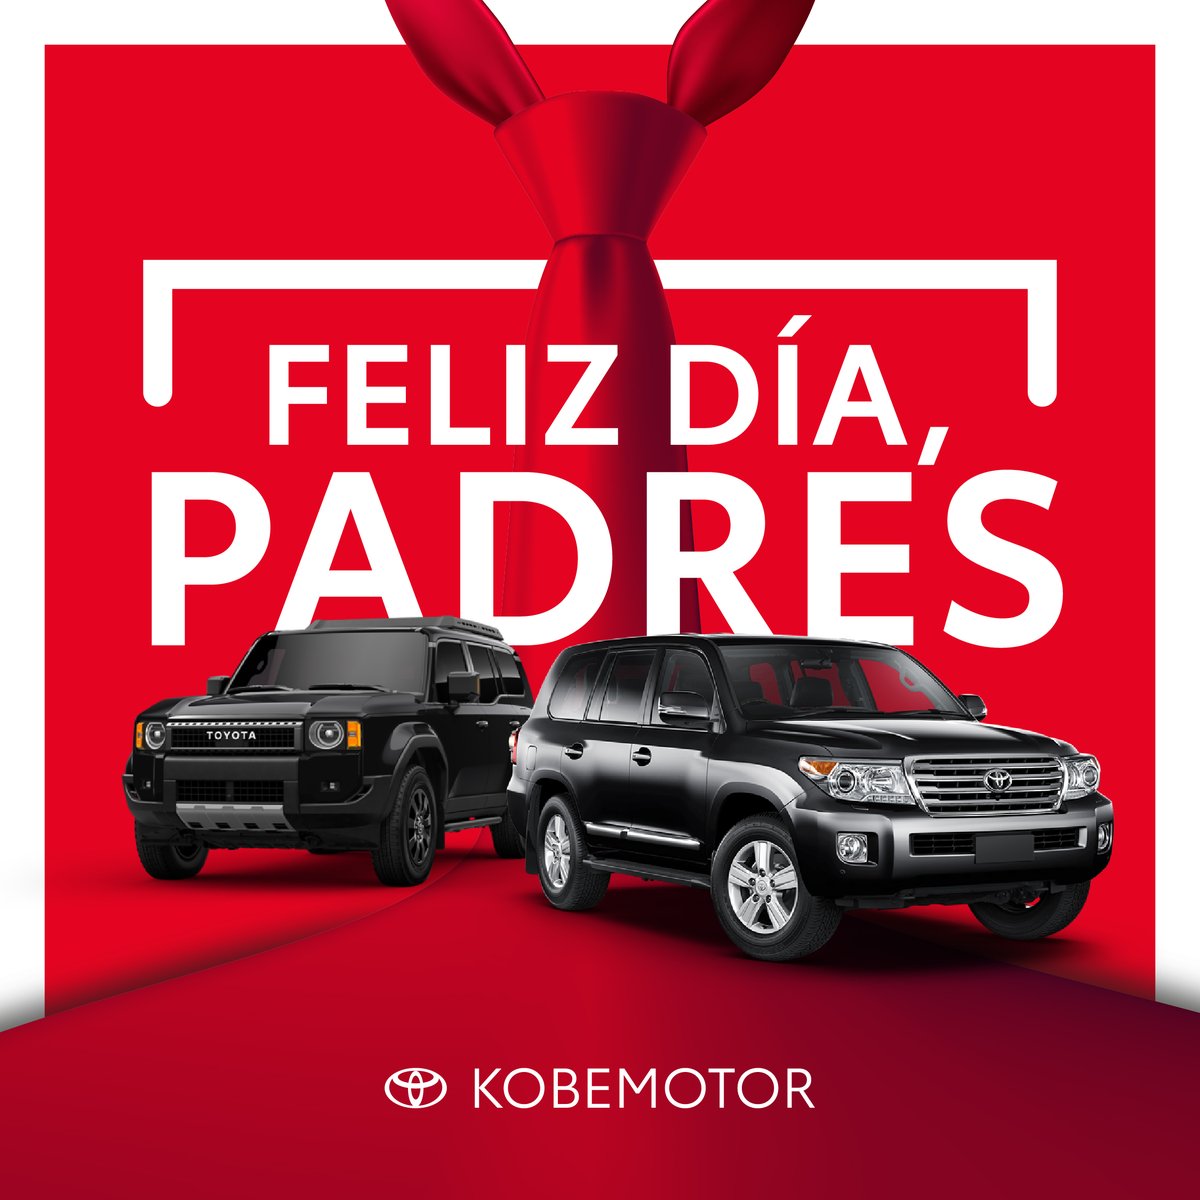 En Toyota apostamos por fijarnos en la experiencia para seguir construyendo un buen futuro. ¡Feliz día del padre! 😀